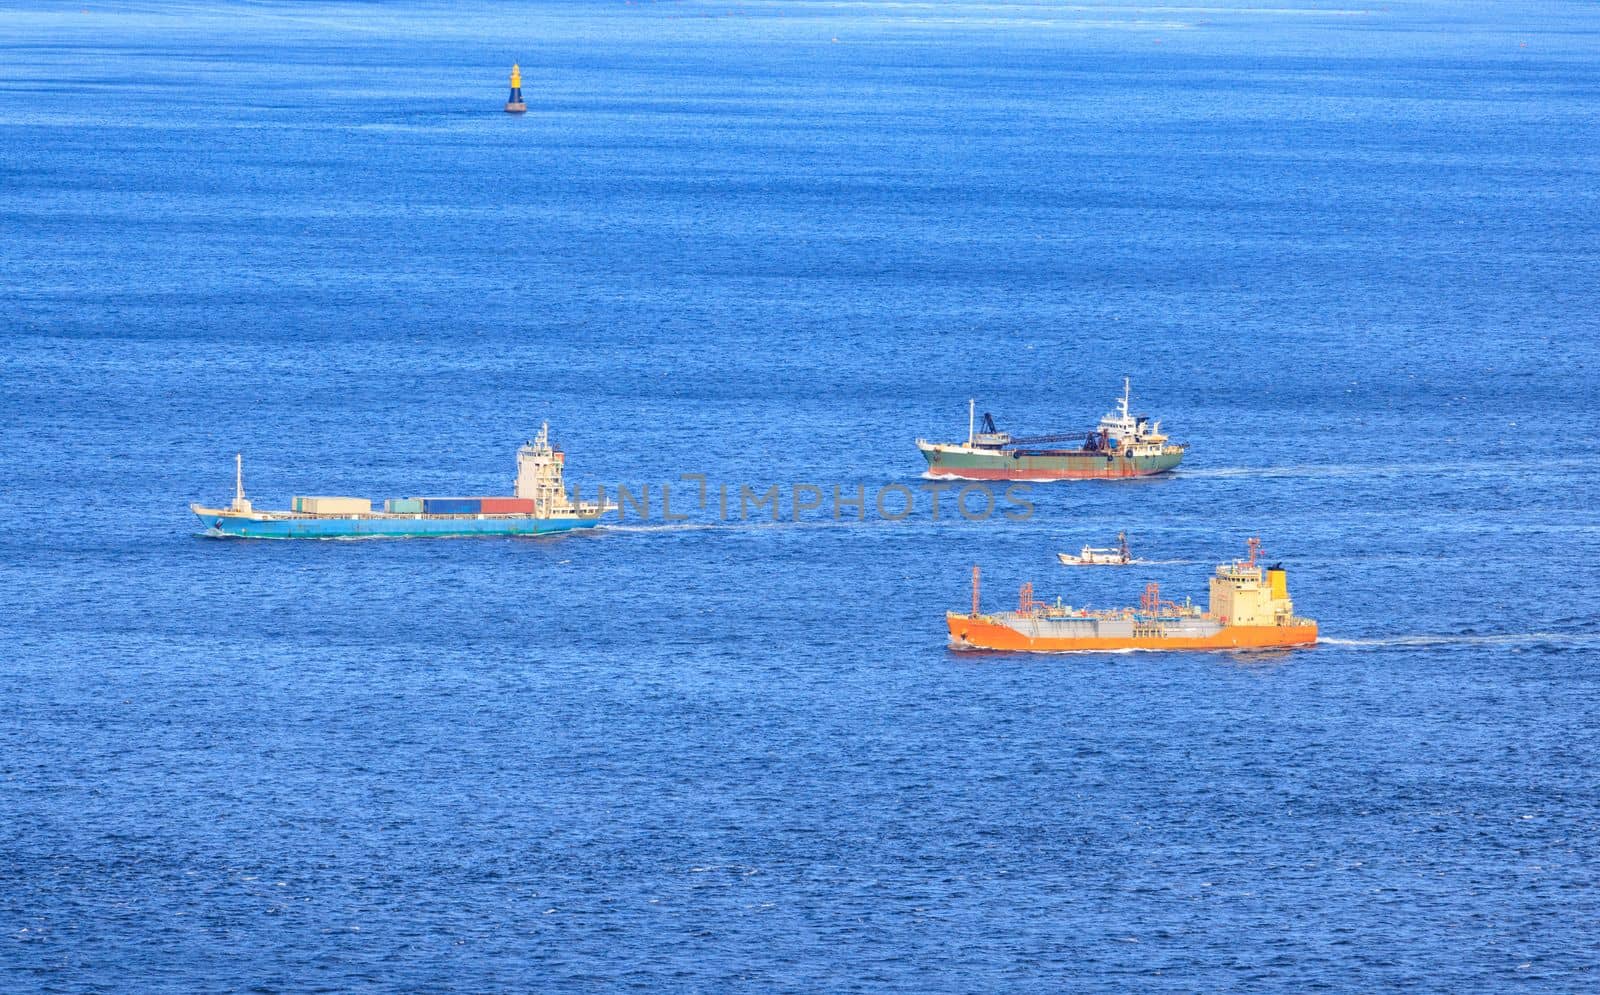 Small Fleet of Cargo Ships Sail through Shipping Lane in Calm Blue Sea by Osaze